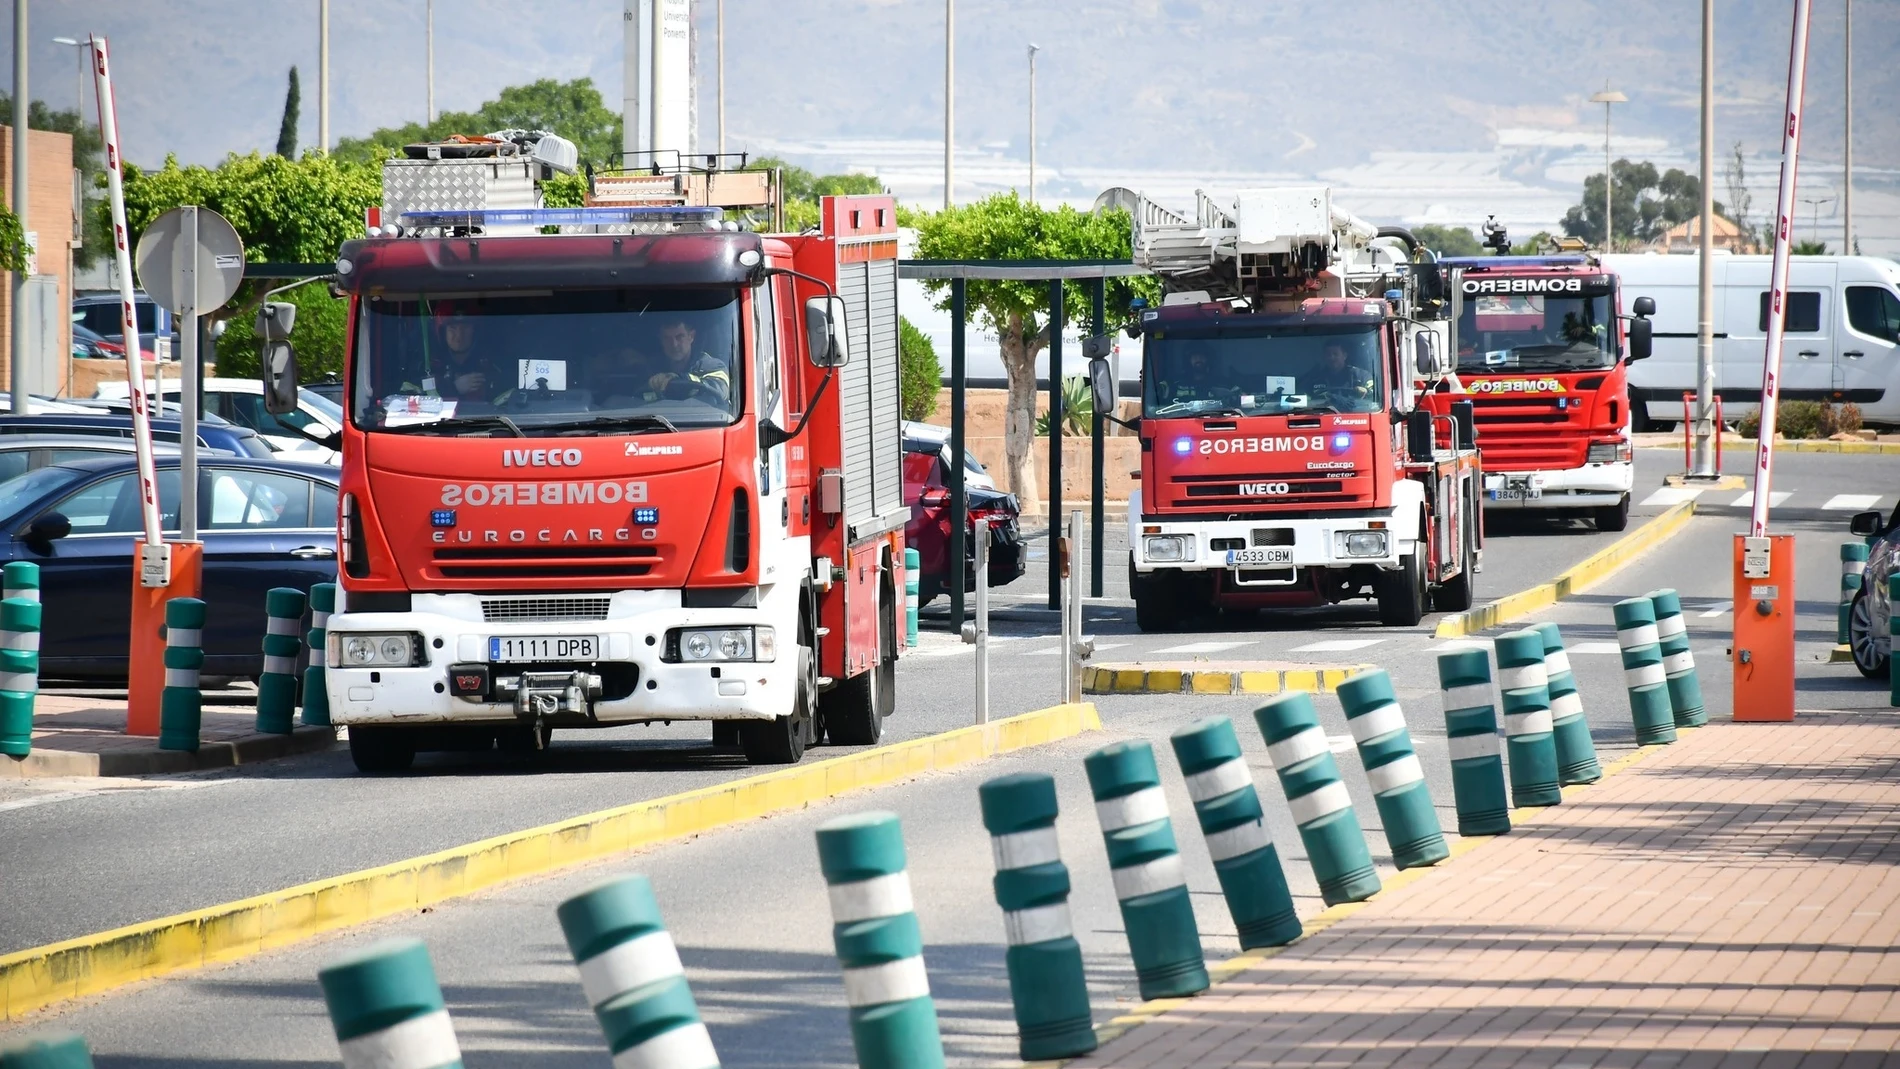 Bomberos del Poniente en el acceso al Hospital Universitario Poniente de El Ejido (Almería)